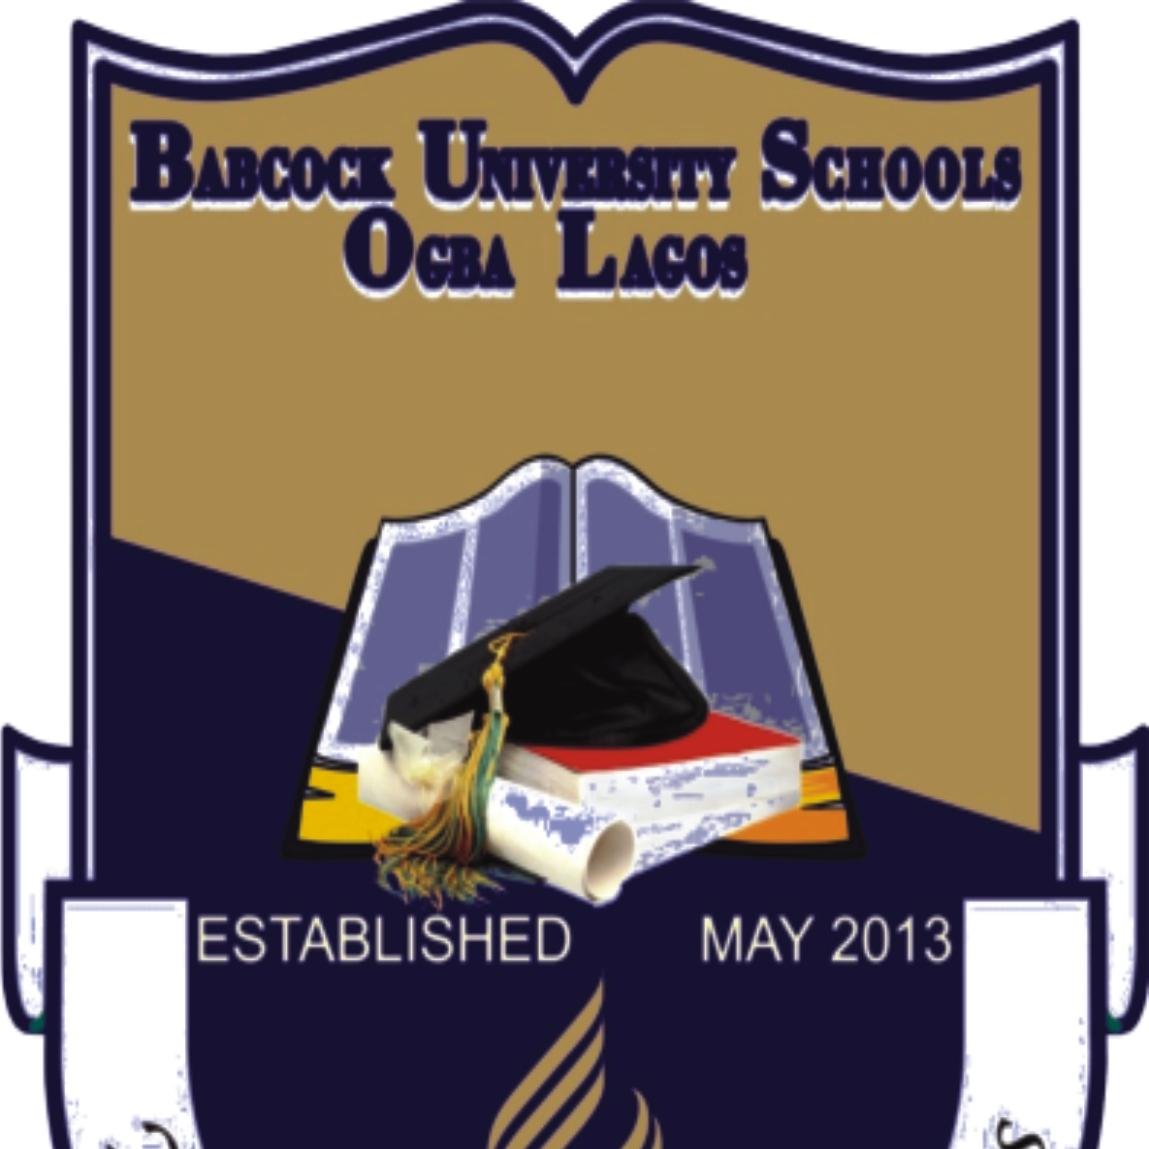 BABCOCK UNIVERSITY SCHOOLS, OGBA